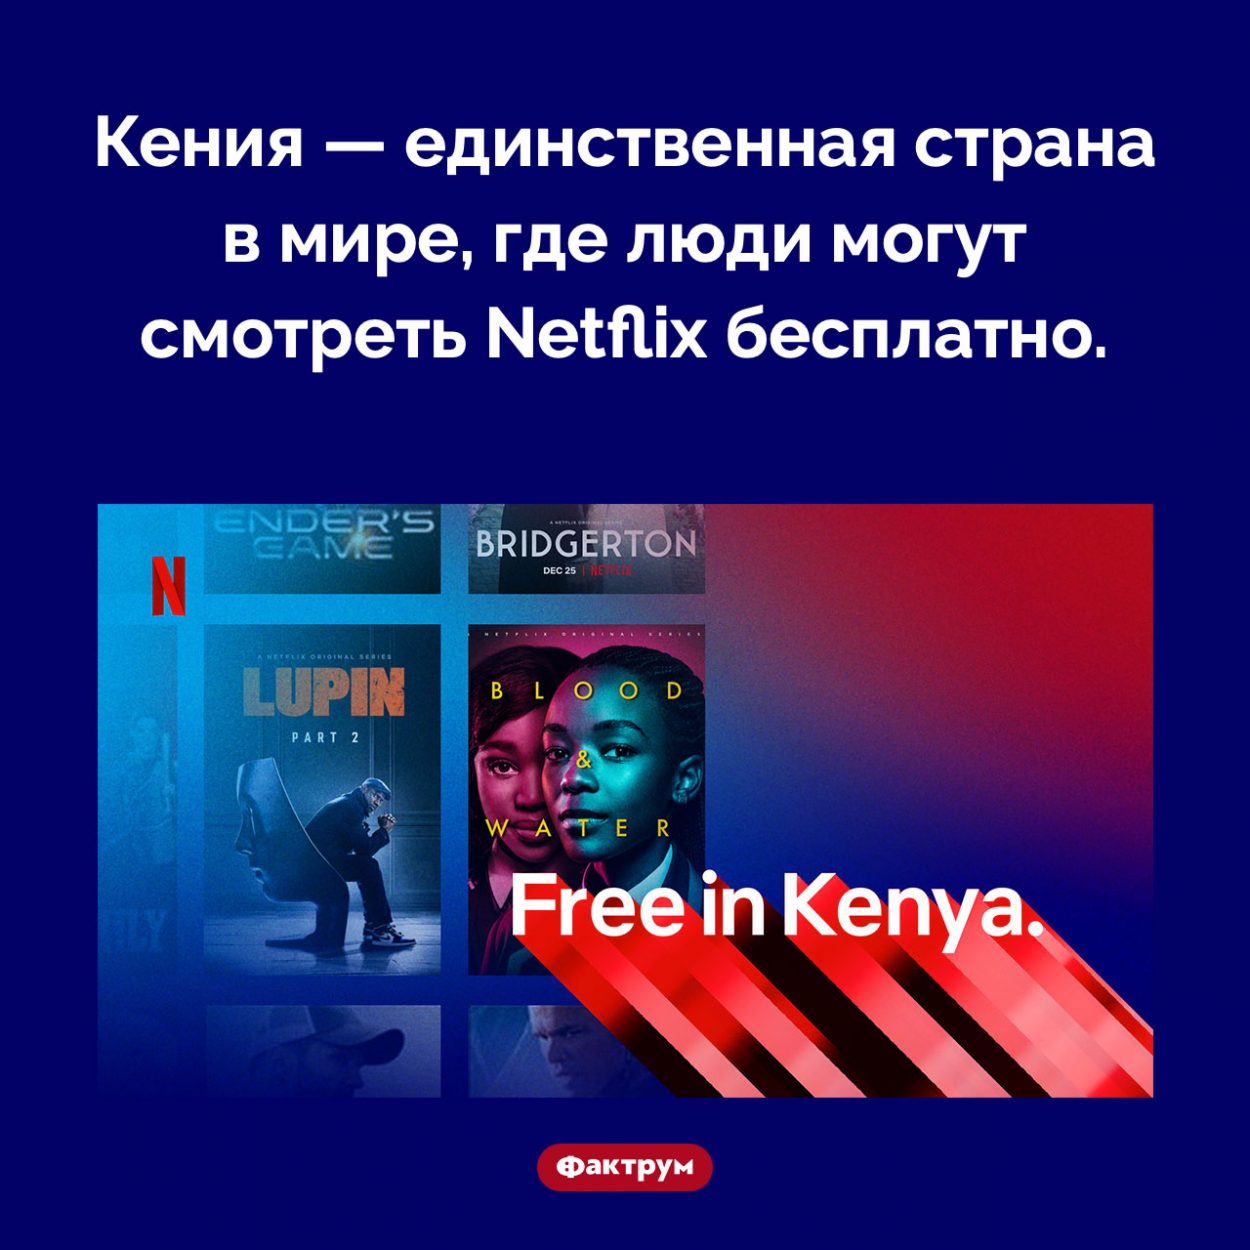 Бесплатный Netflix для кенийцев. Кения — единственная страна в мире, где люди могут смотреть Netflix бесплатно.